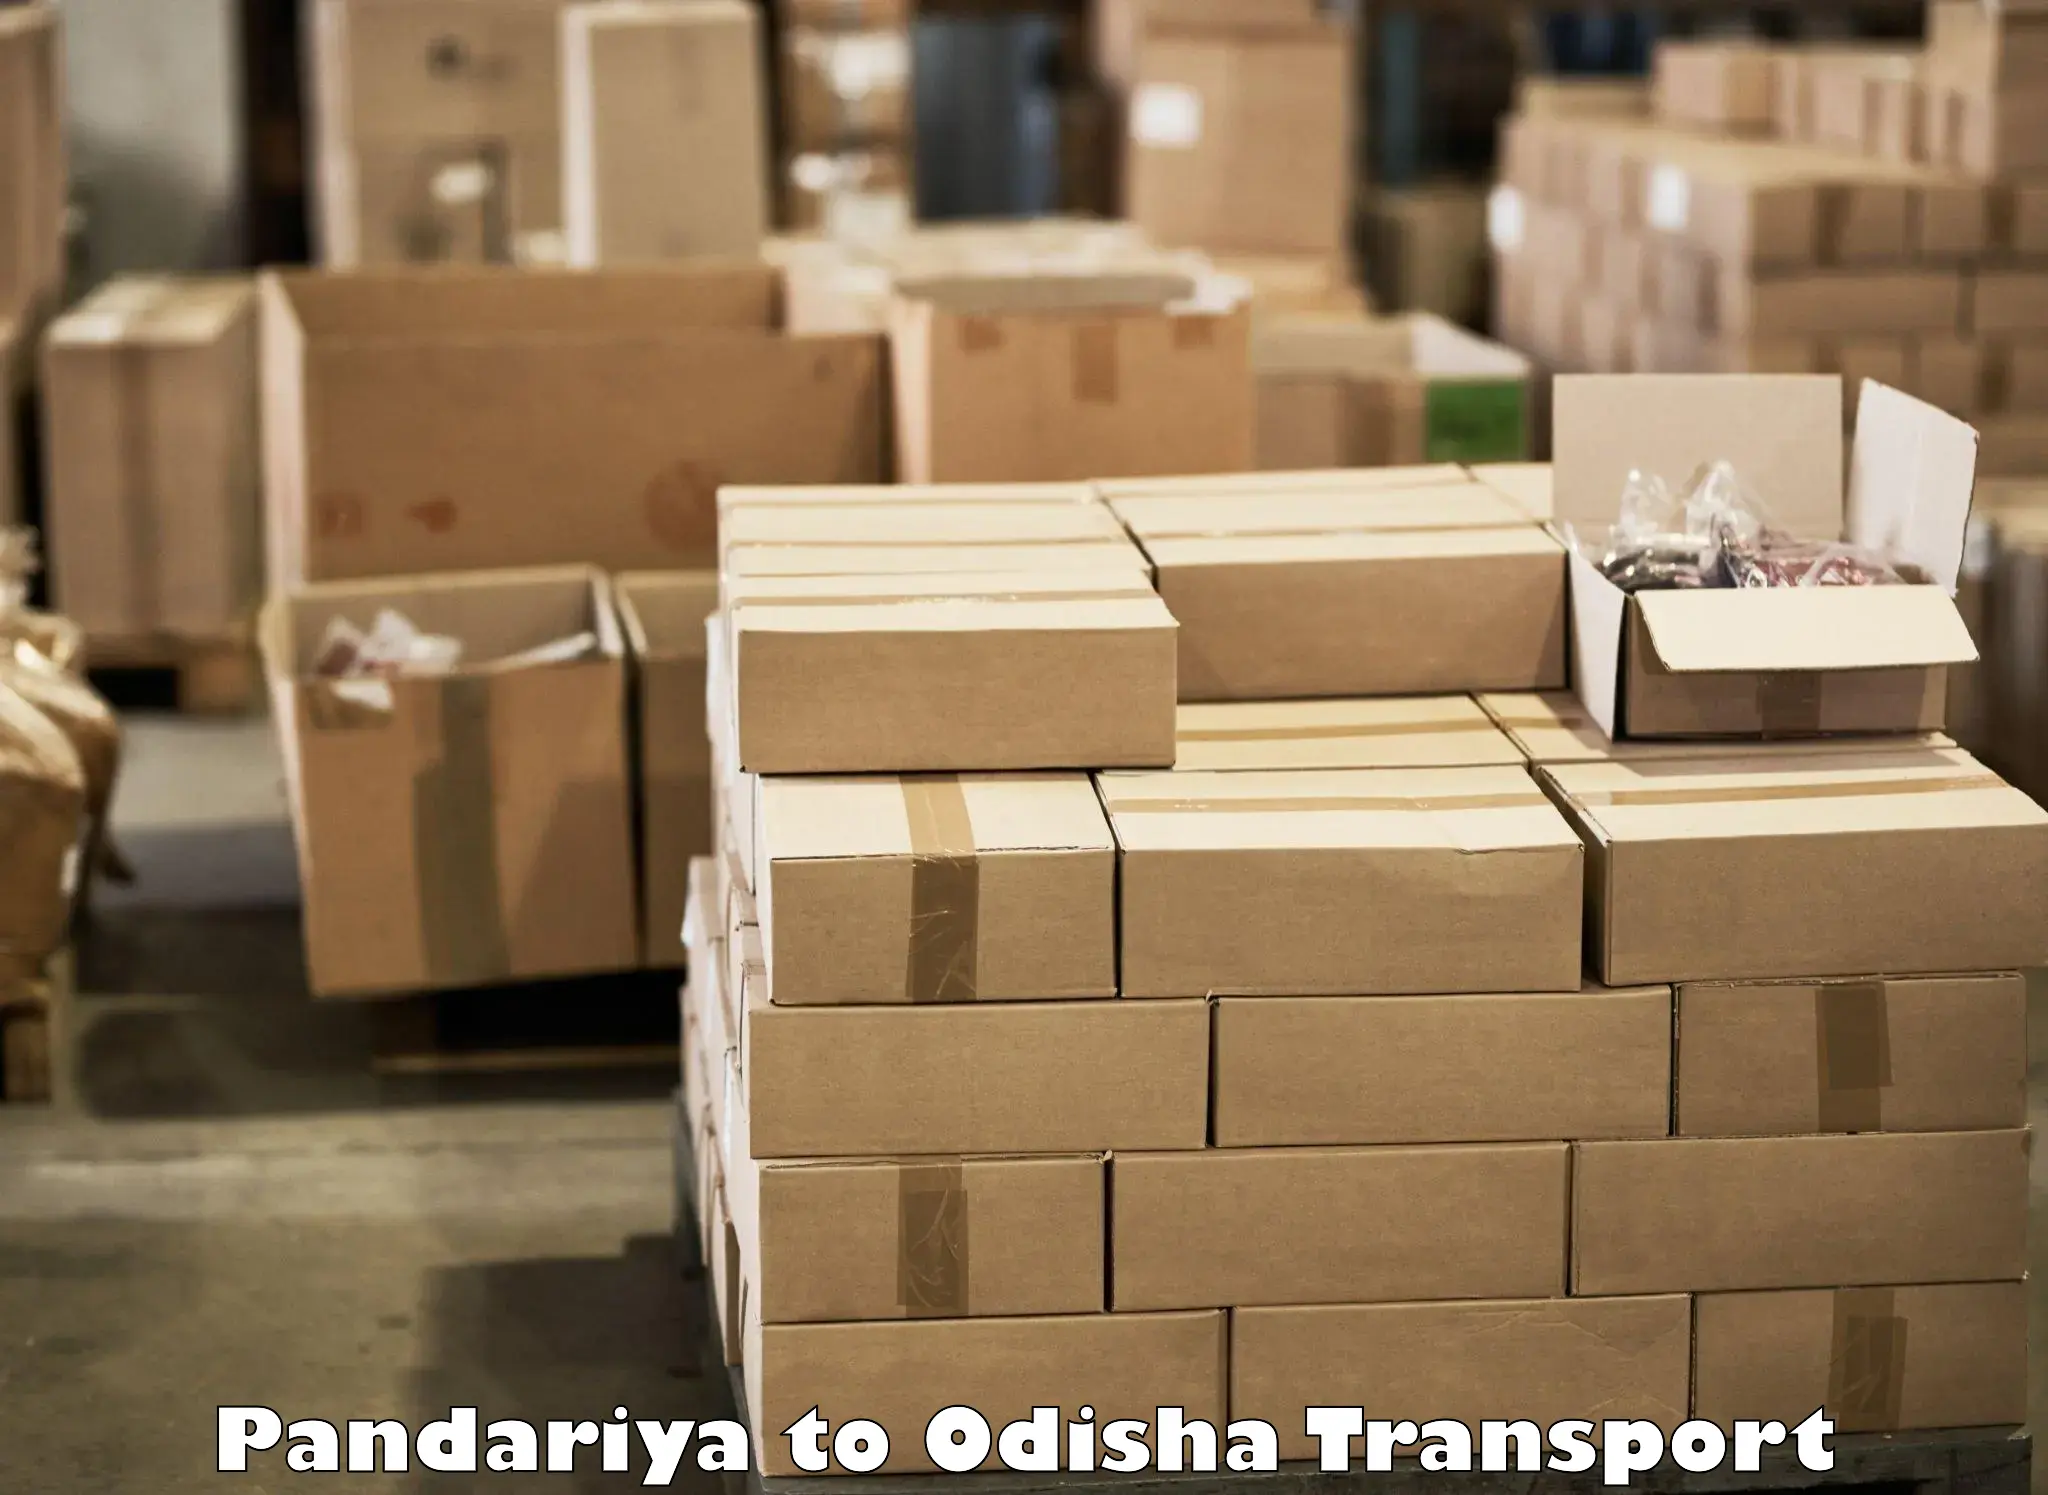 Interstate transport services in Pandariya to Ghatgaon